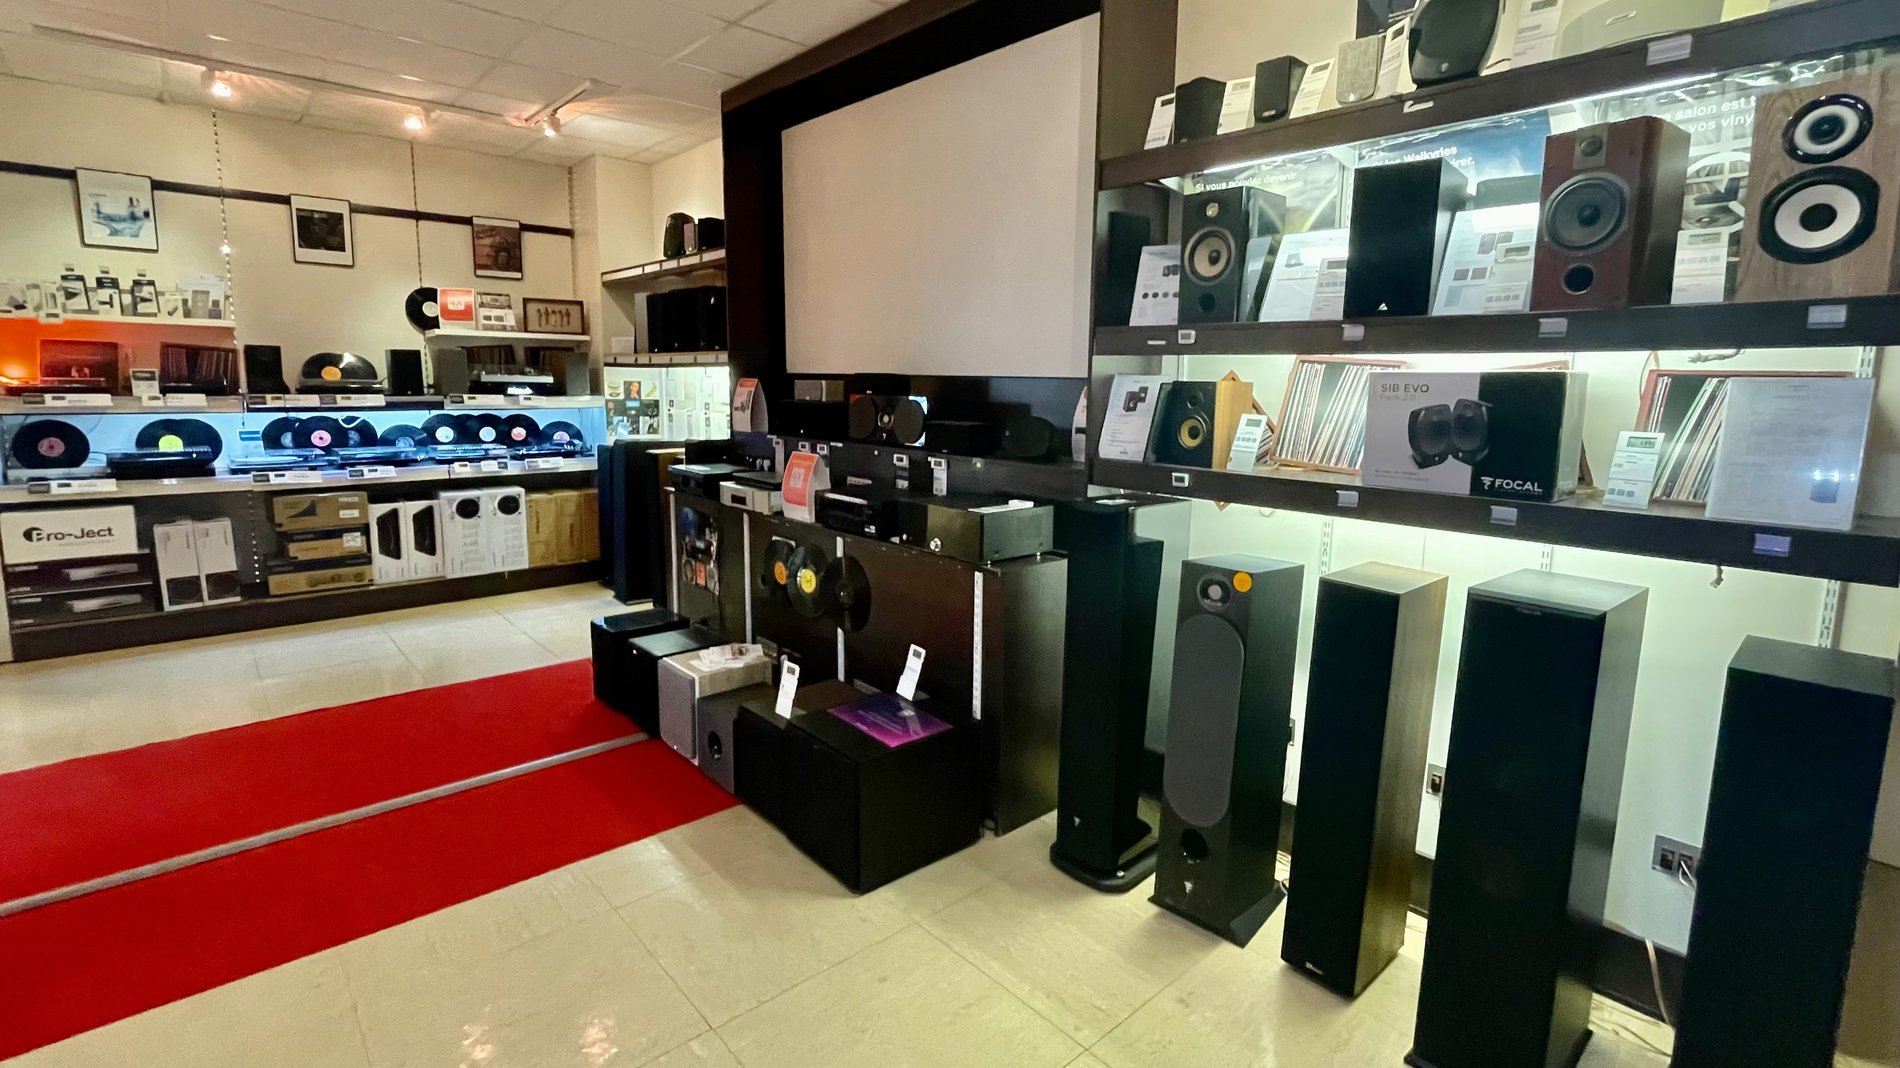 Intérieur de l'auditorium de votre magasin Boulanger Saint-Nazaire - Trignac avec vidéos projecteurs, colonnes, ampli, et platines vinyles